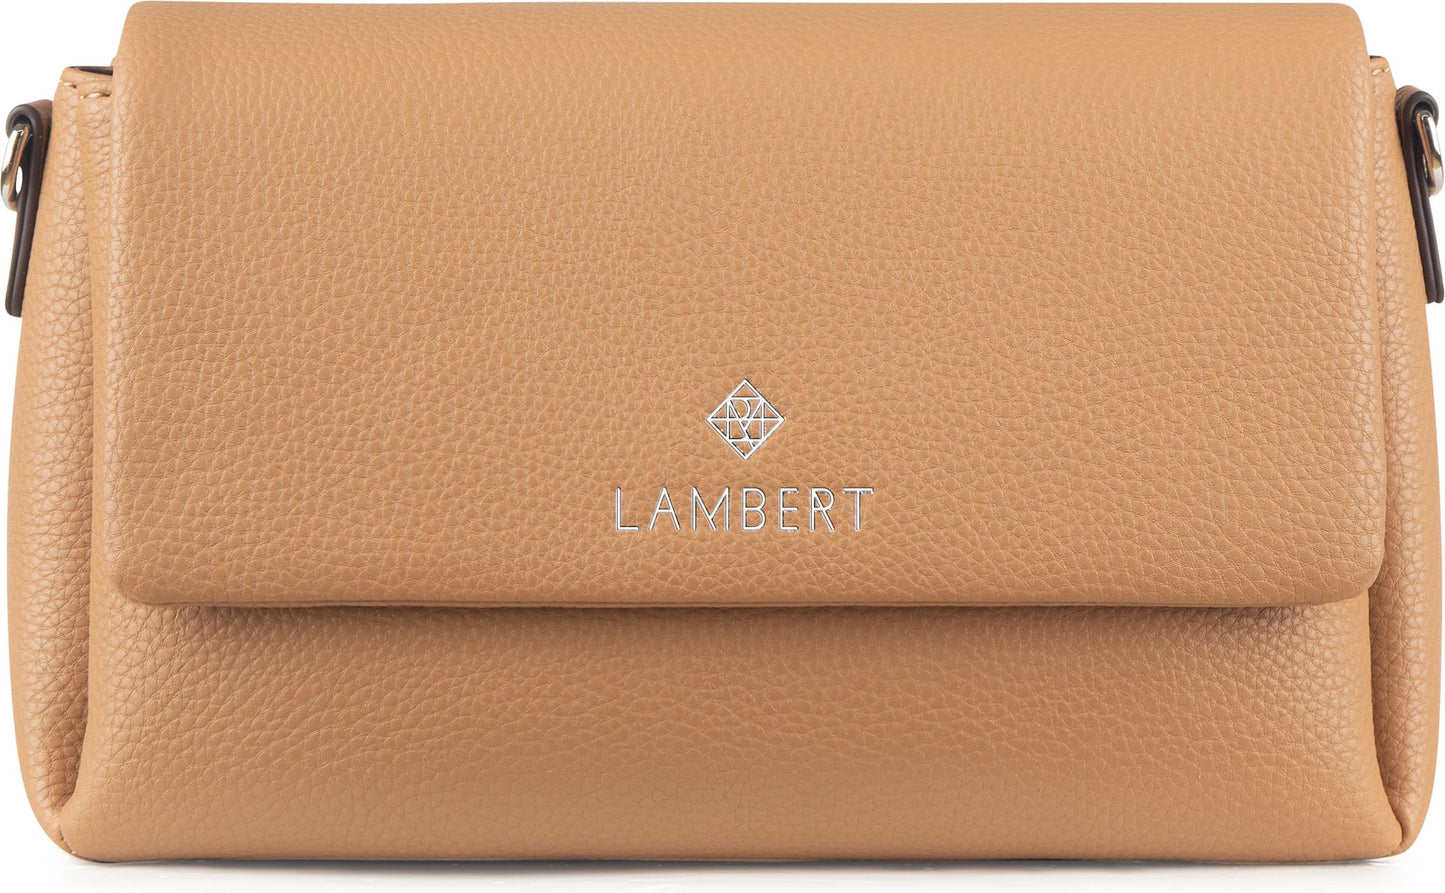 Lambert Accessories 2 In 1 Crossbody Bag Calabasas Pebble